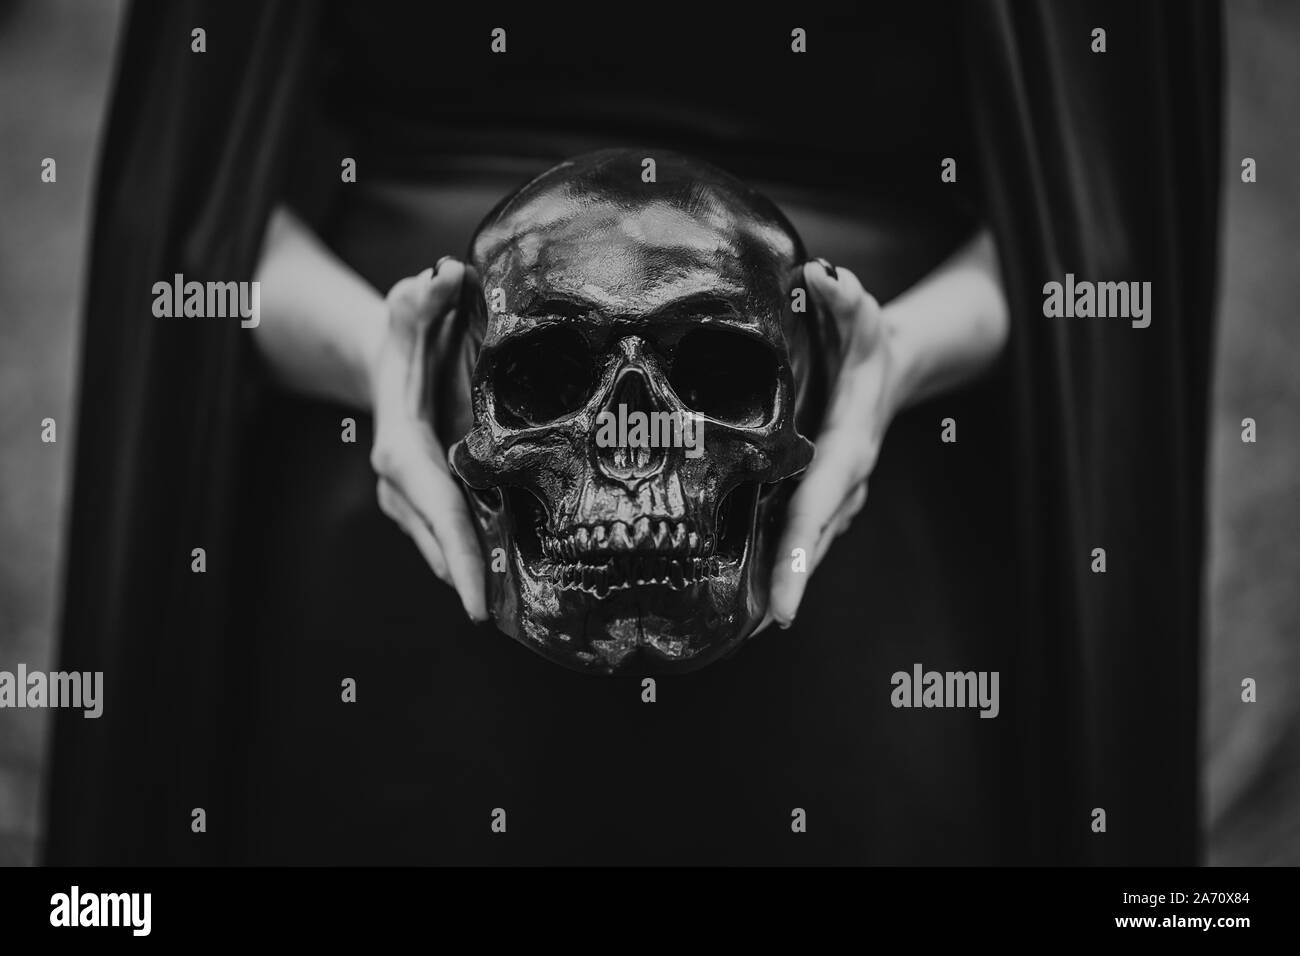 Femme crâne dans les mains.La mort, rituels spirituels concept, Halloween, horreur, effrayant symbole de mort. Noir et blanc. Banque D'Images